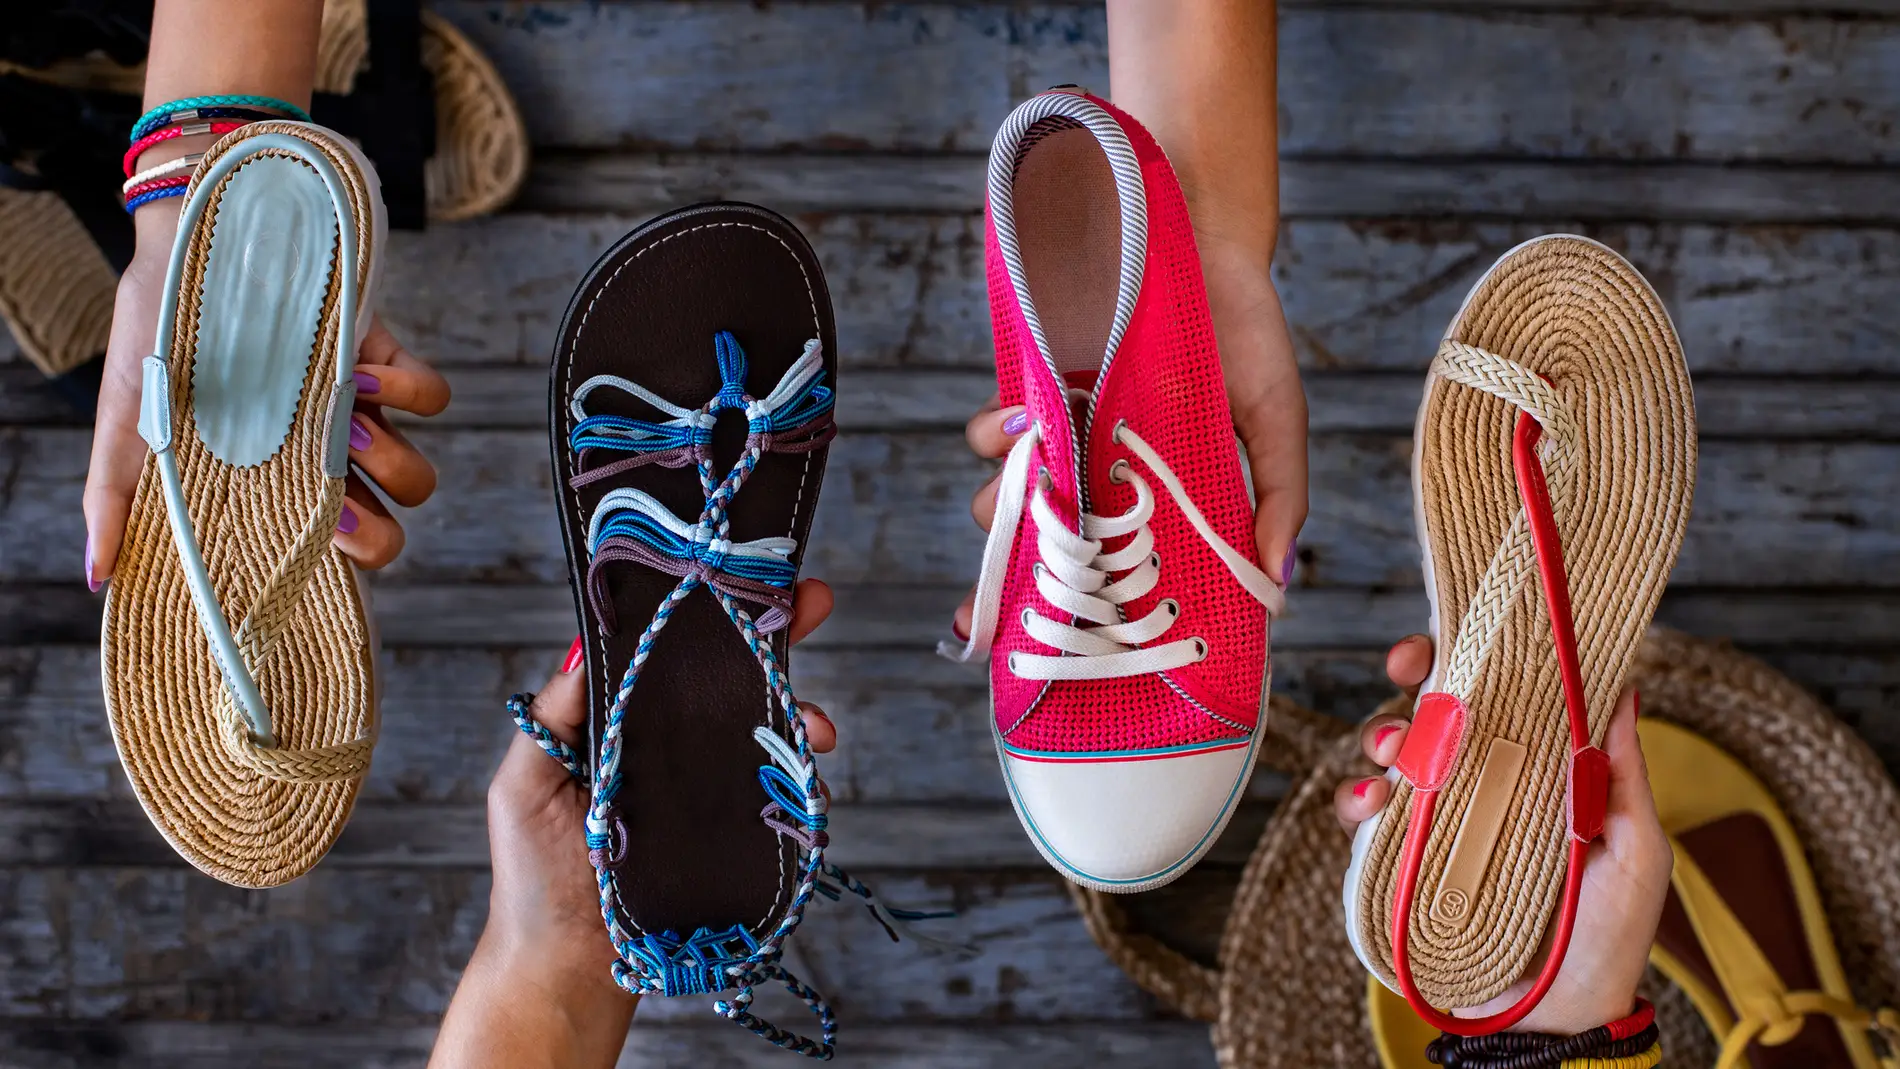 Las sandalias que vienen pisando fuerte este verano: Cristina Pedroche, Paula Echevarría y Sara Carbonero ya las lucen